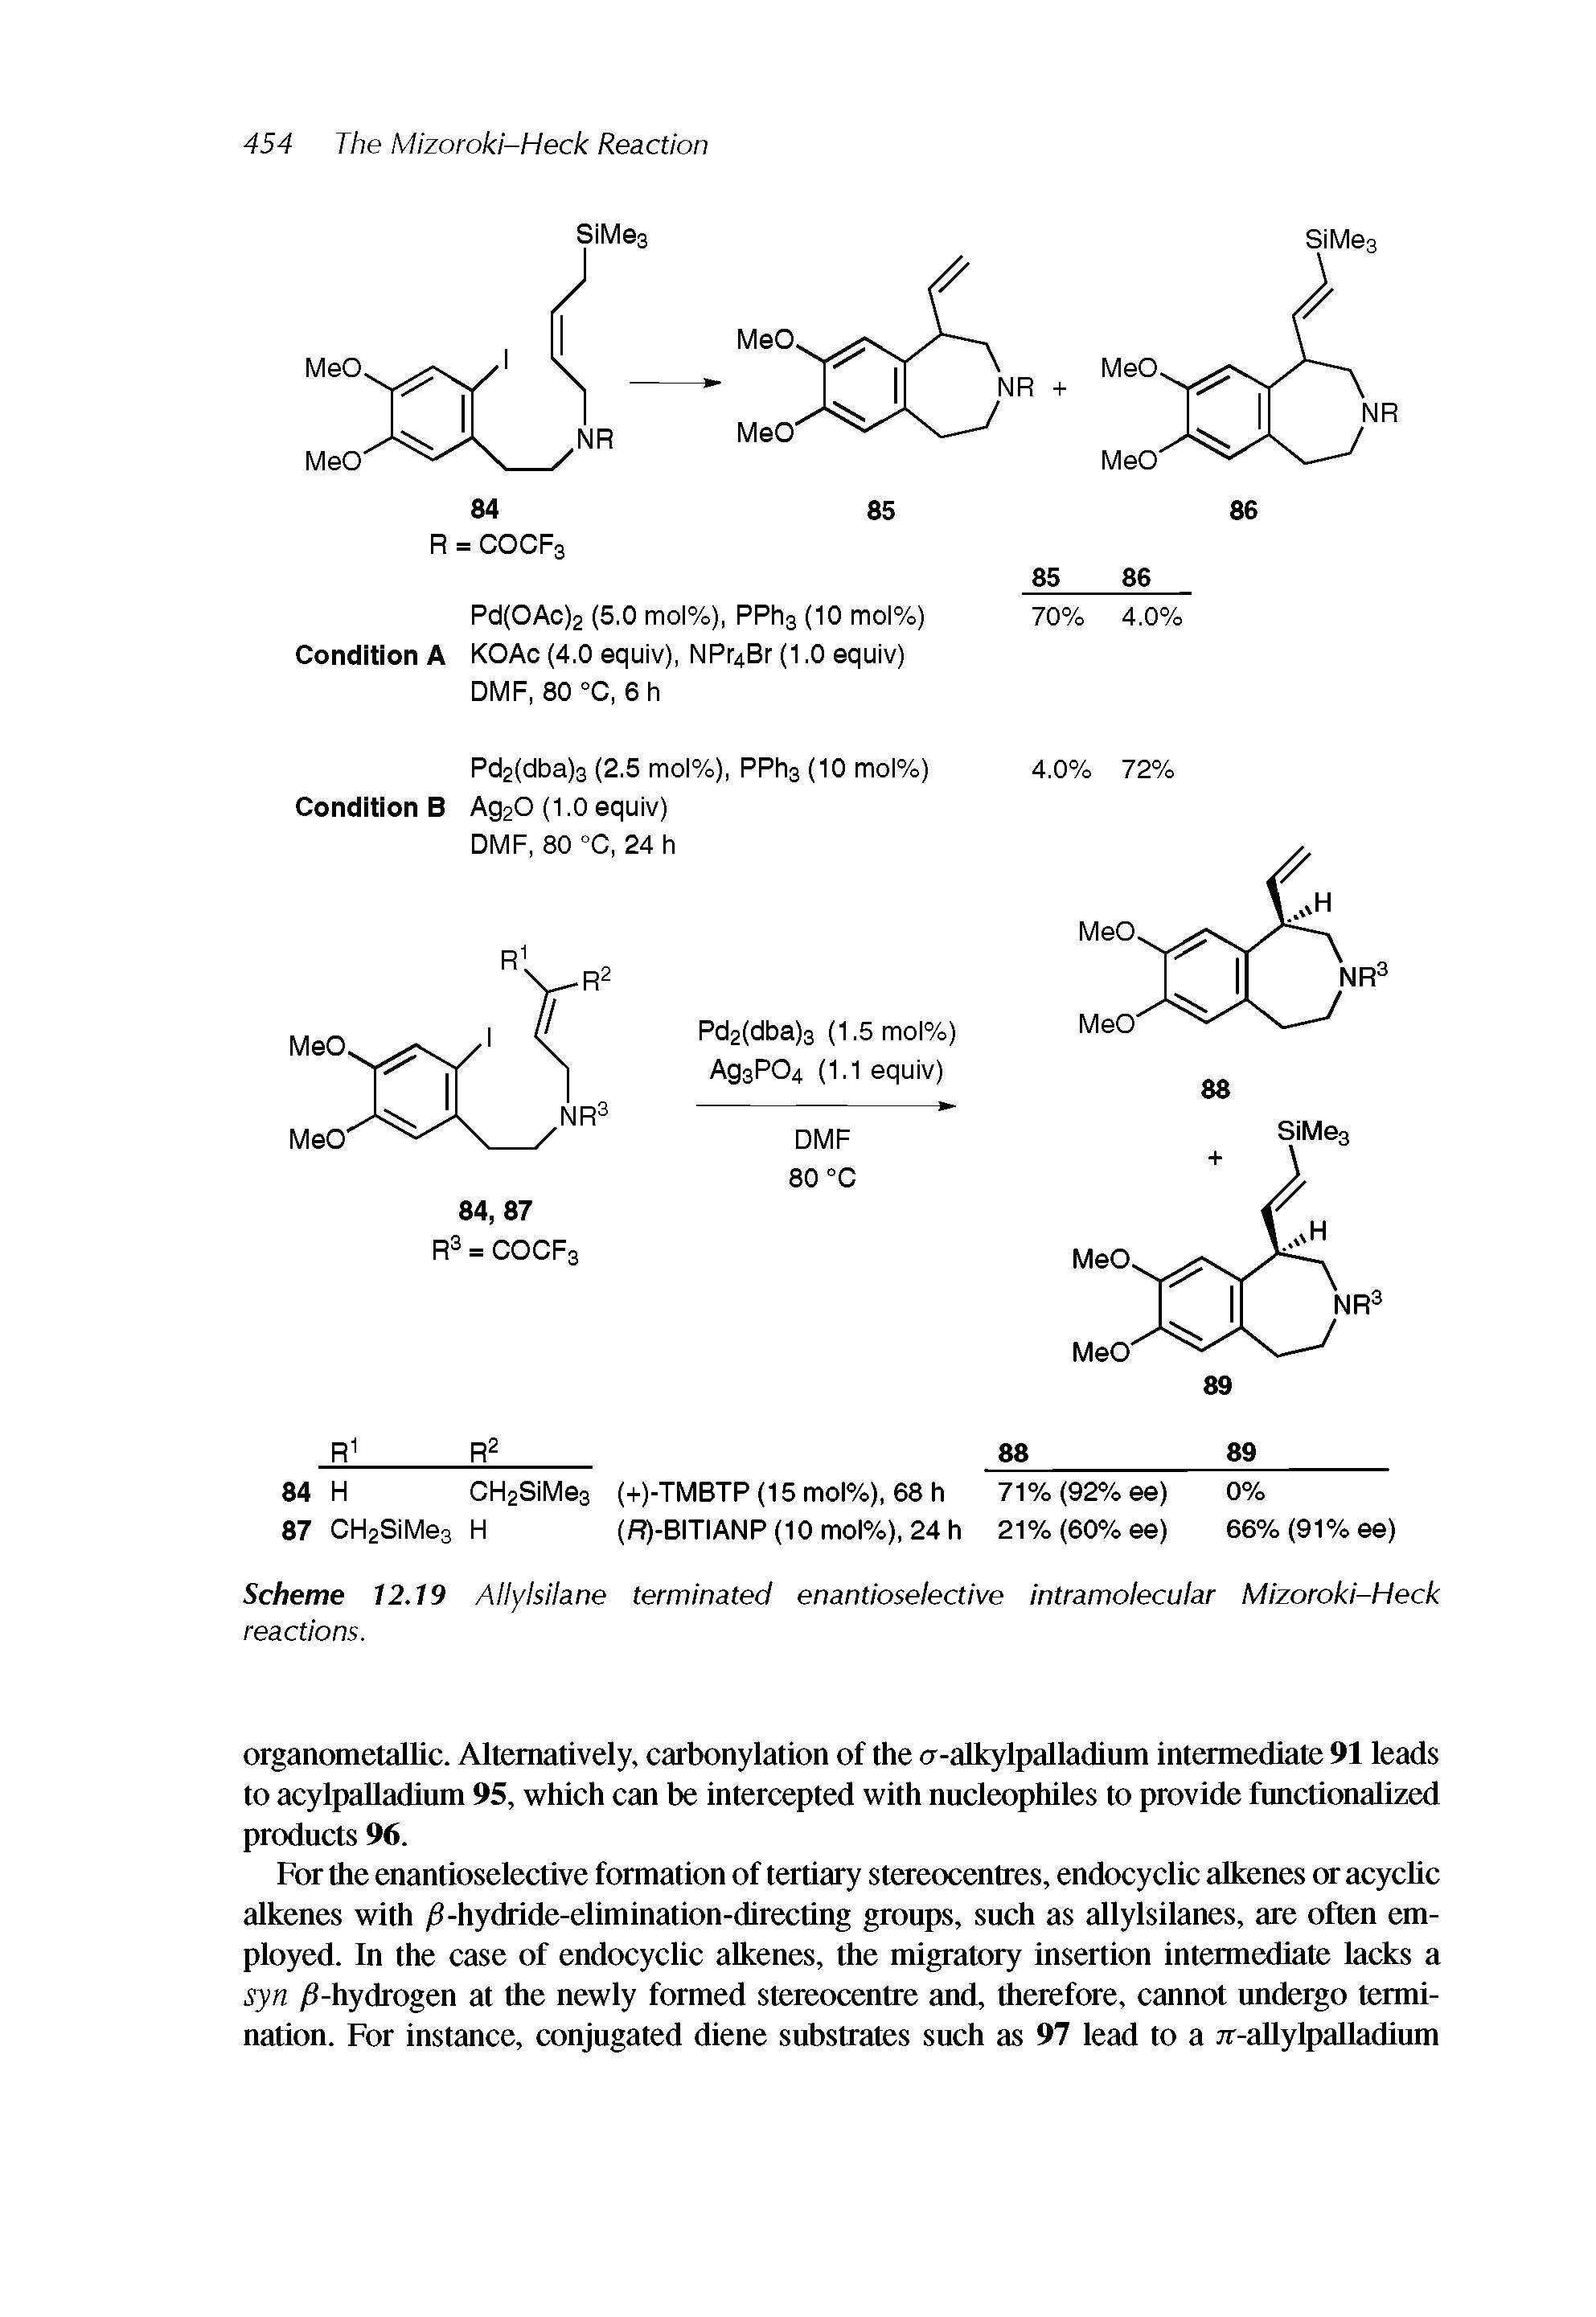 Scheme 12.19 Allylsilane terminated enantioselective intramolecular Mizoroki-Heck reactions.